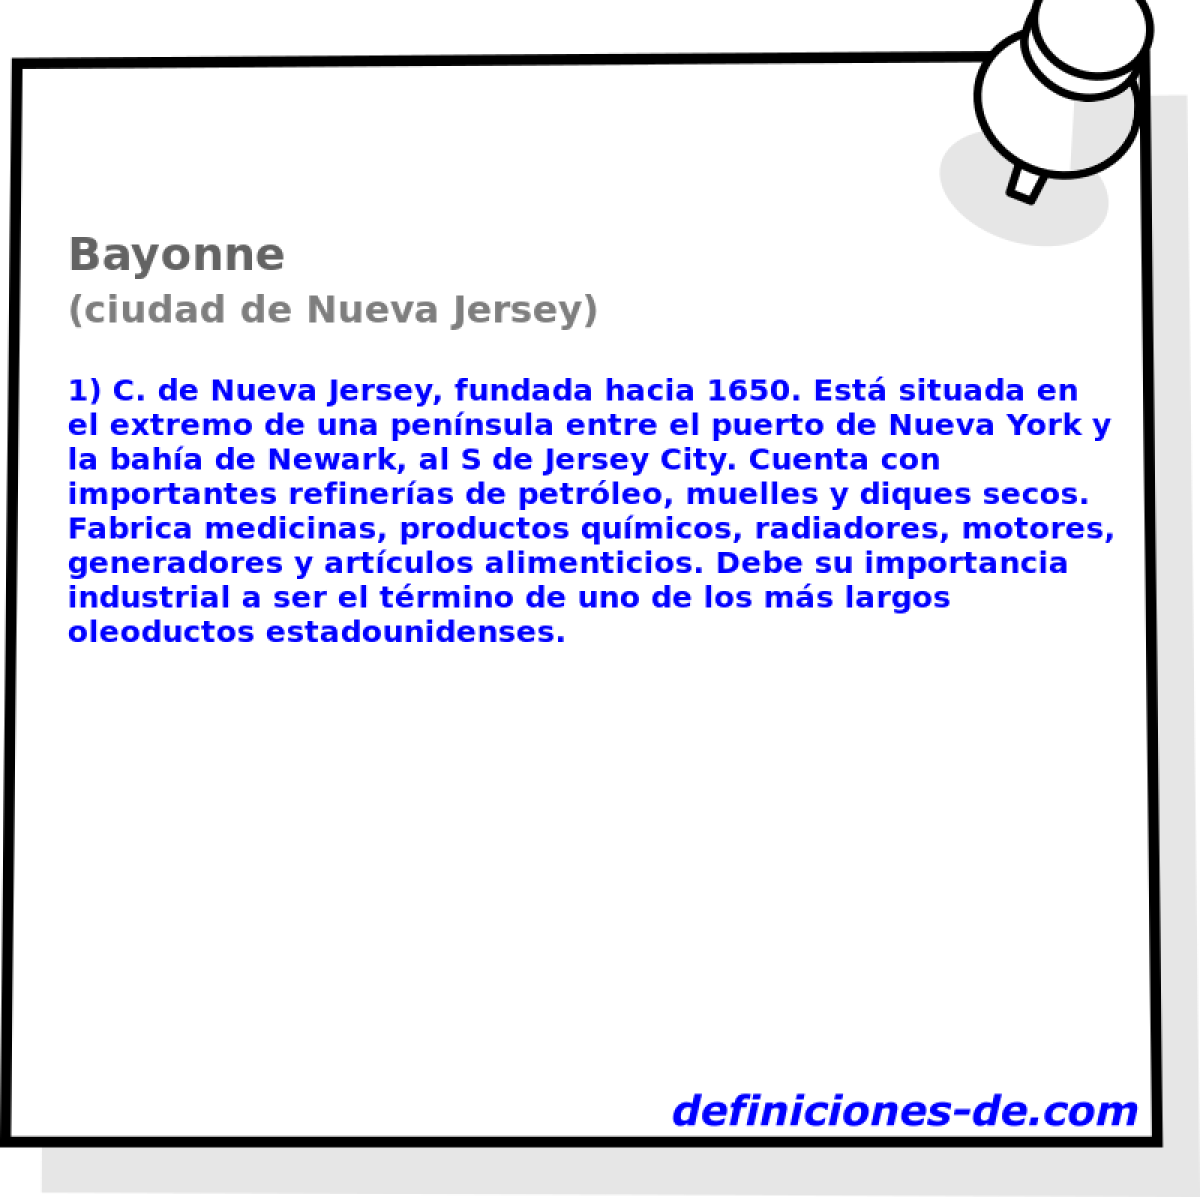 Bayonne (ciudad de Nueva Jersey)